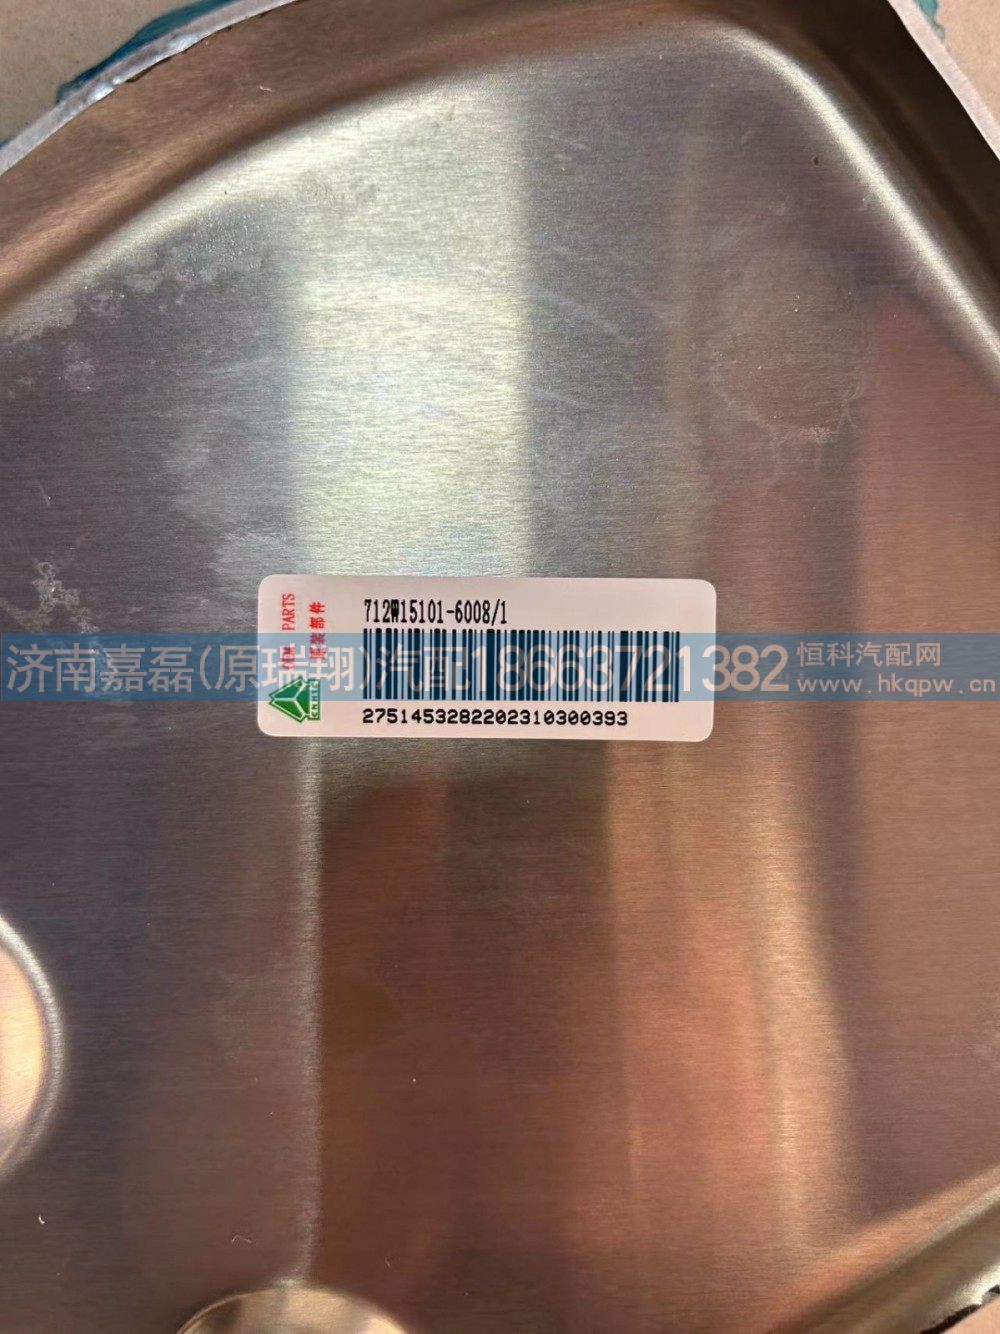 712W15101-6008,U型后处理器后装饰板,济南嘉磊汽车配件有限公司(原济南瑞翔)